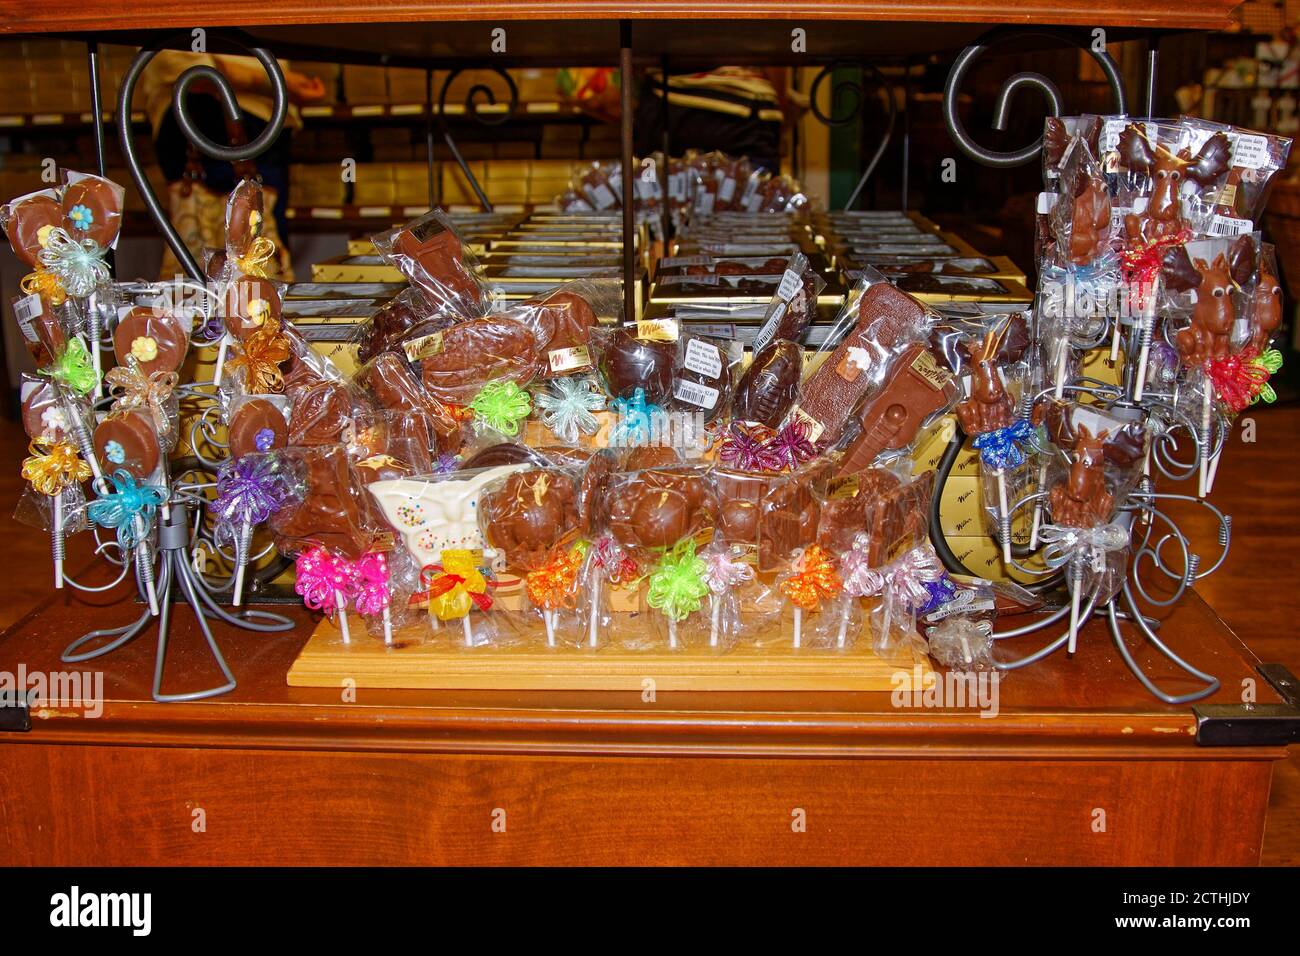 Wilbur Chocolate, exhibición de caramelos, paletas, individualmente envuelto en celofán, coloridos arcos, comida, dulces, tienda, Lancaster County, Pennsylvania, Lititz Foto de stock